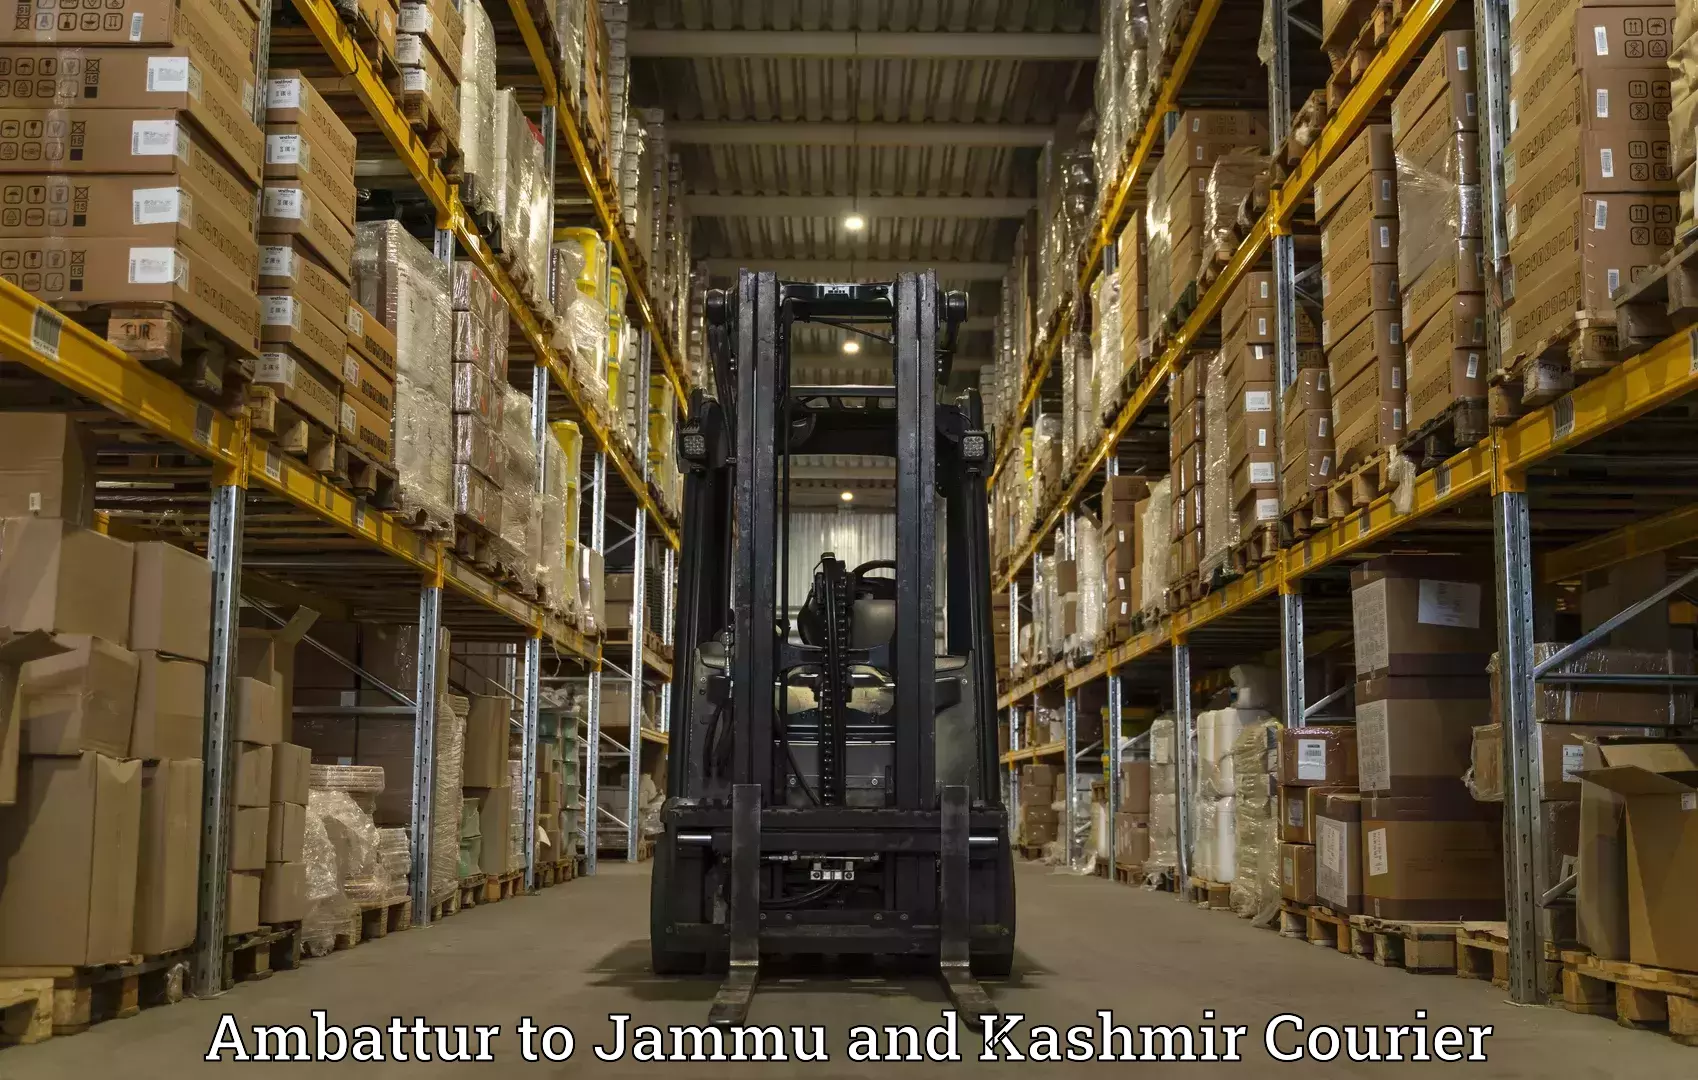 Modern parcel services Ambattur to Srinagar Kashmir